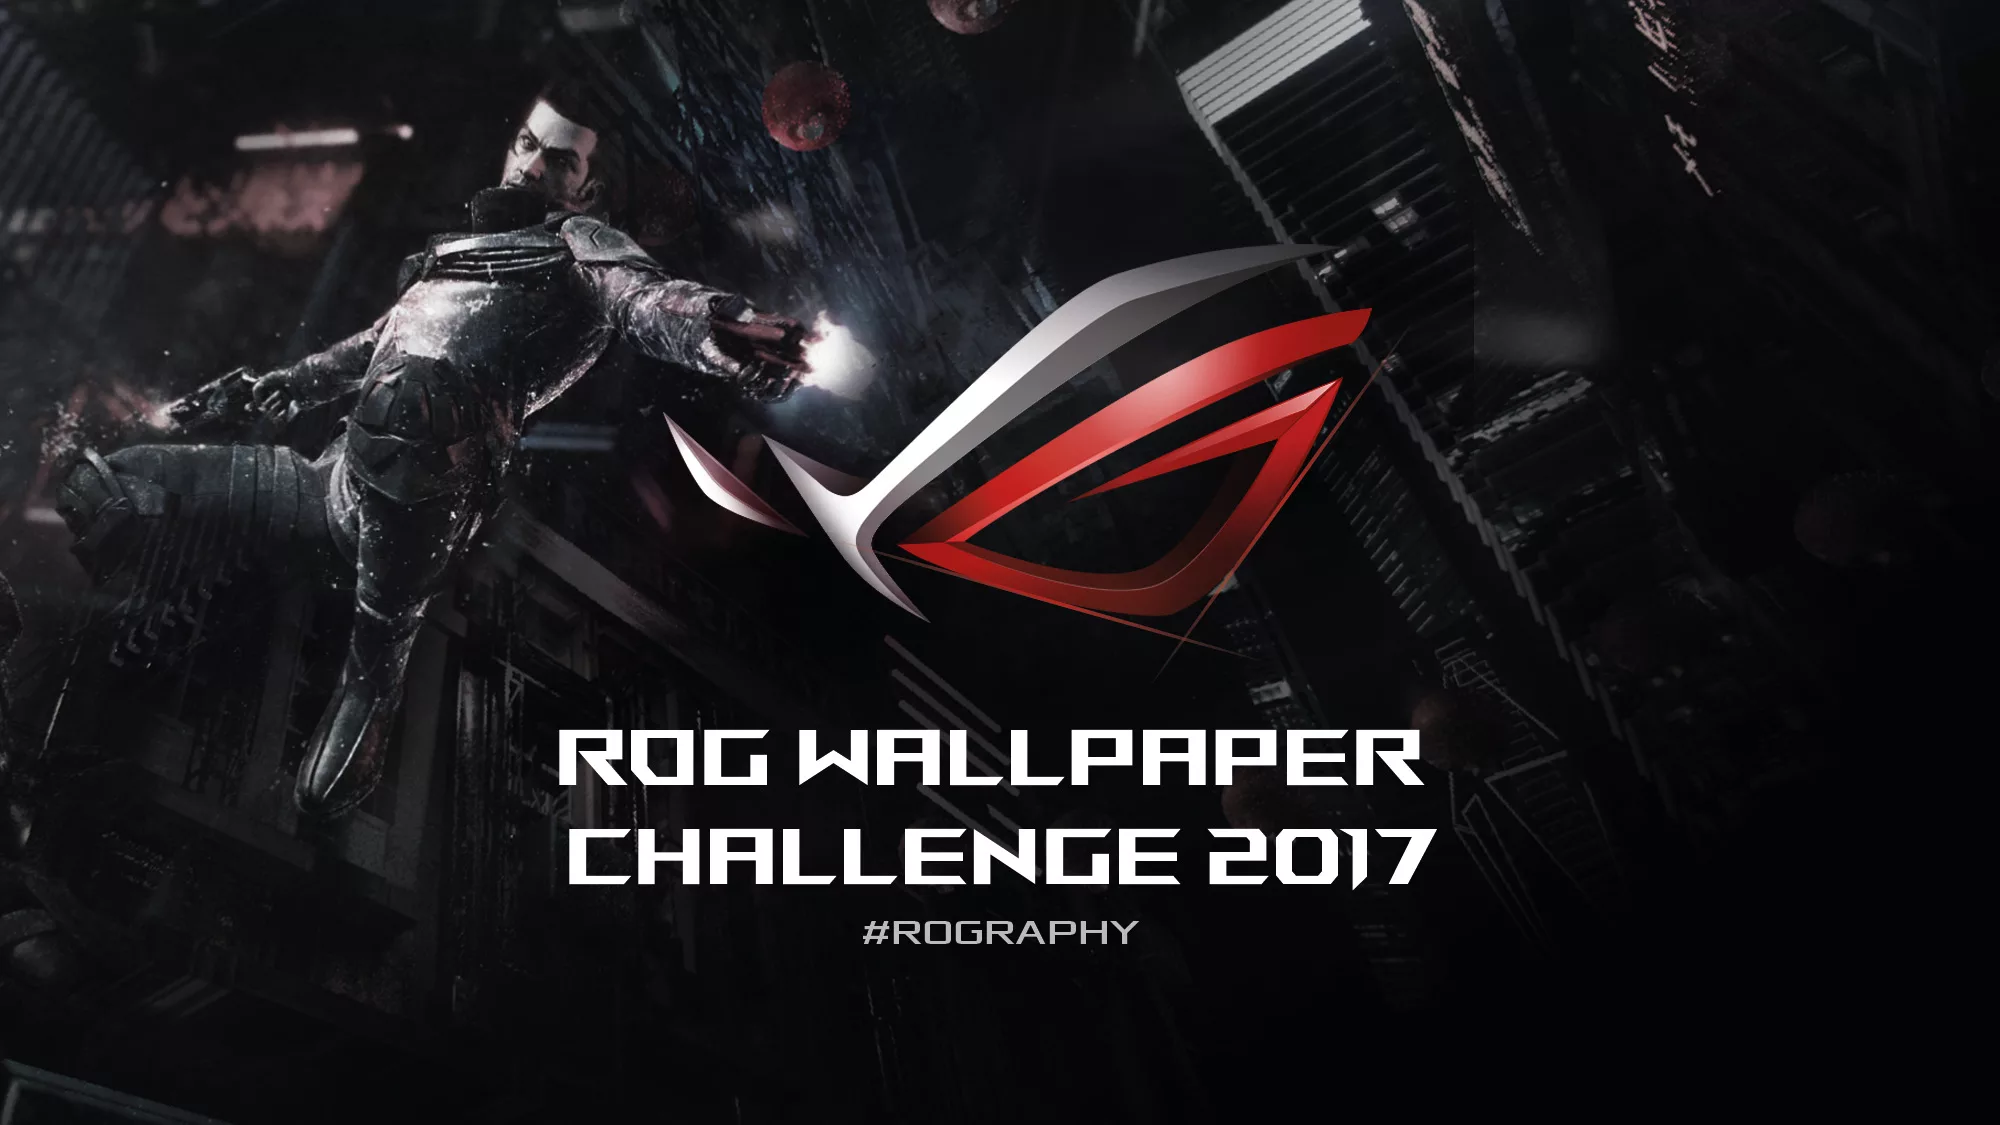 Thử thách ROG Wallpaper để giành ROG Zephyrus và màn hình PG27VQ là cơ hội để bạn trải nghiệm sản phẩm cao cấp, đẳng cấp của ROG. Với bức ảnh đầy đam mê và sức sống, bạn sẽ cảm nhận được trọn vẹn sự tuyệt vời của sản phẩm này. Đừng bỏ lỡ cơ hội để giành chiến thắng trong thử thách ROG Wallpaper.